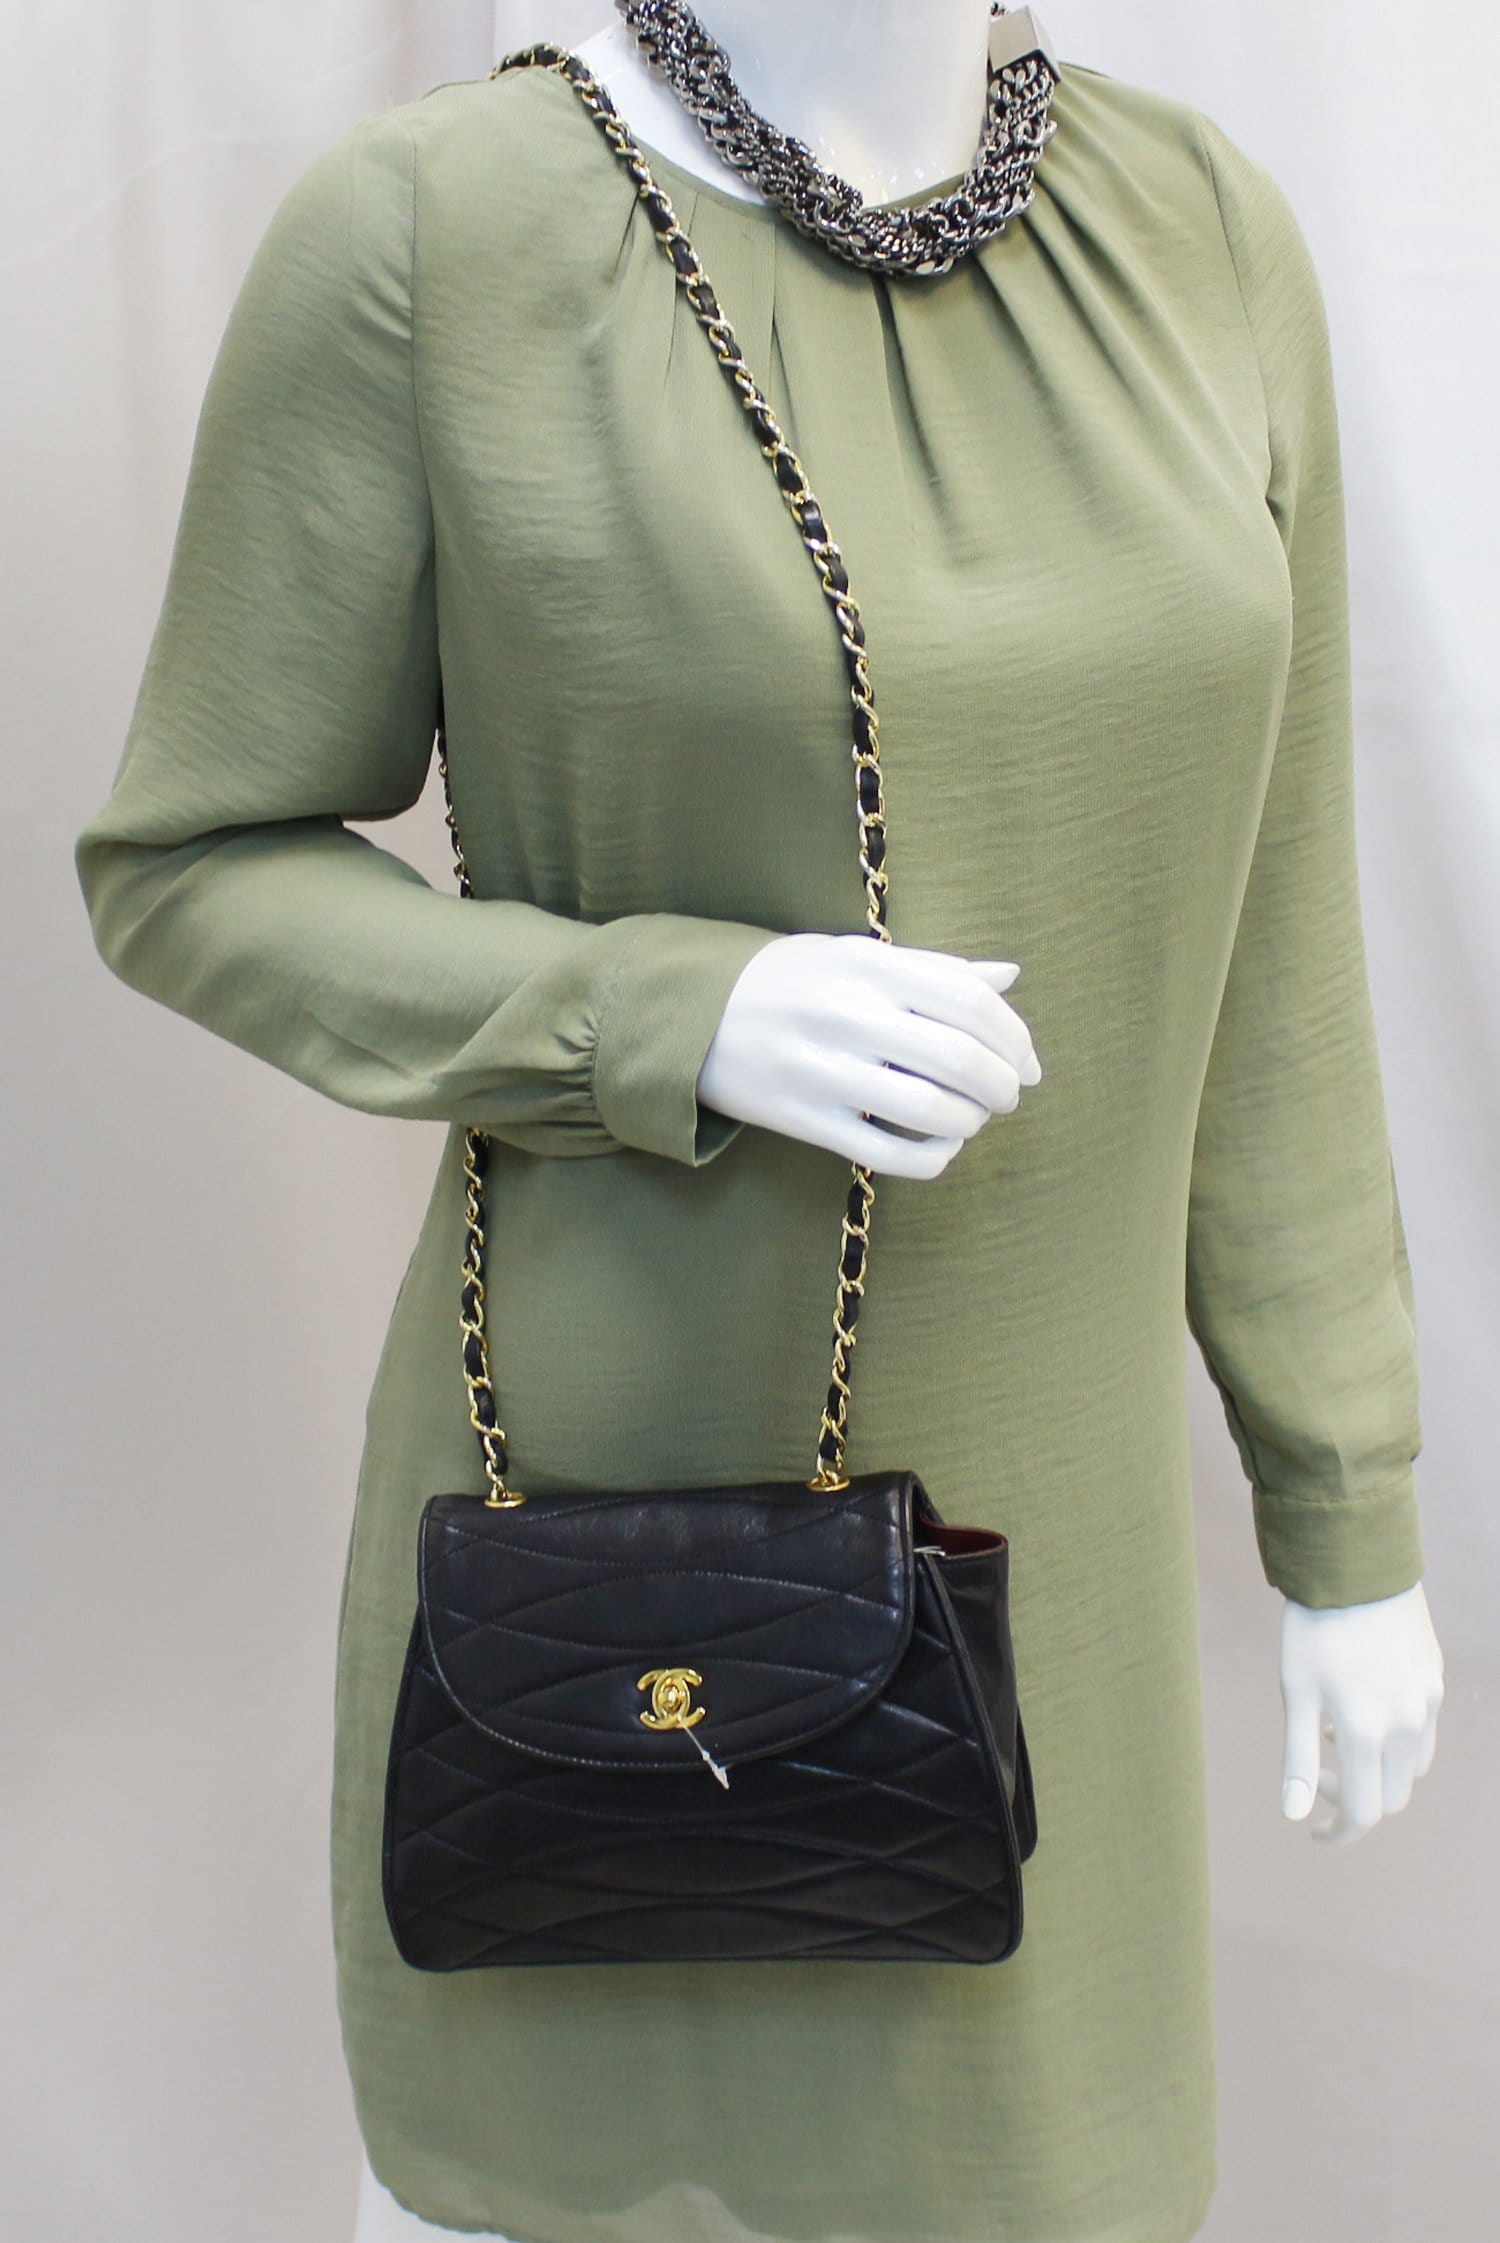 Chanel Womens CC Coco Mark Surpique Vintage Tote Handbag Brown Black Leather